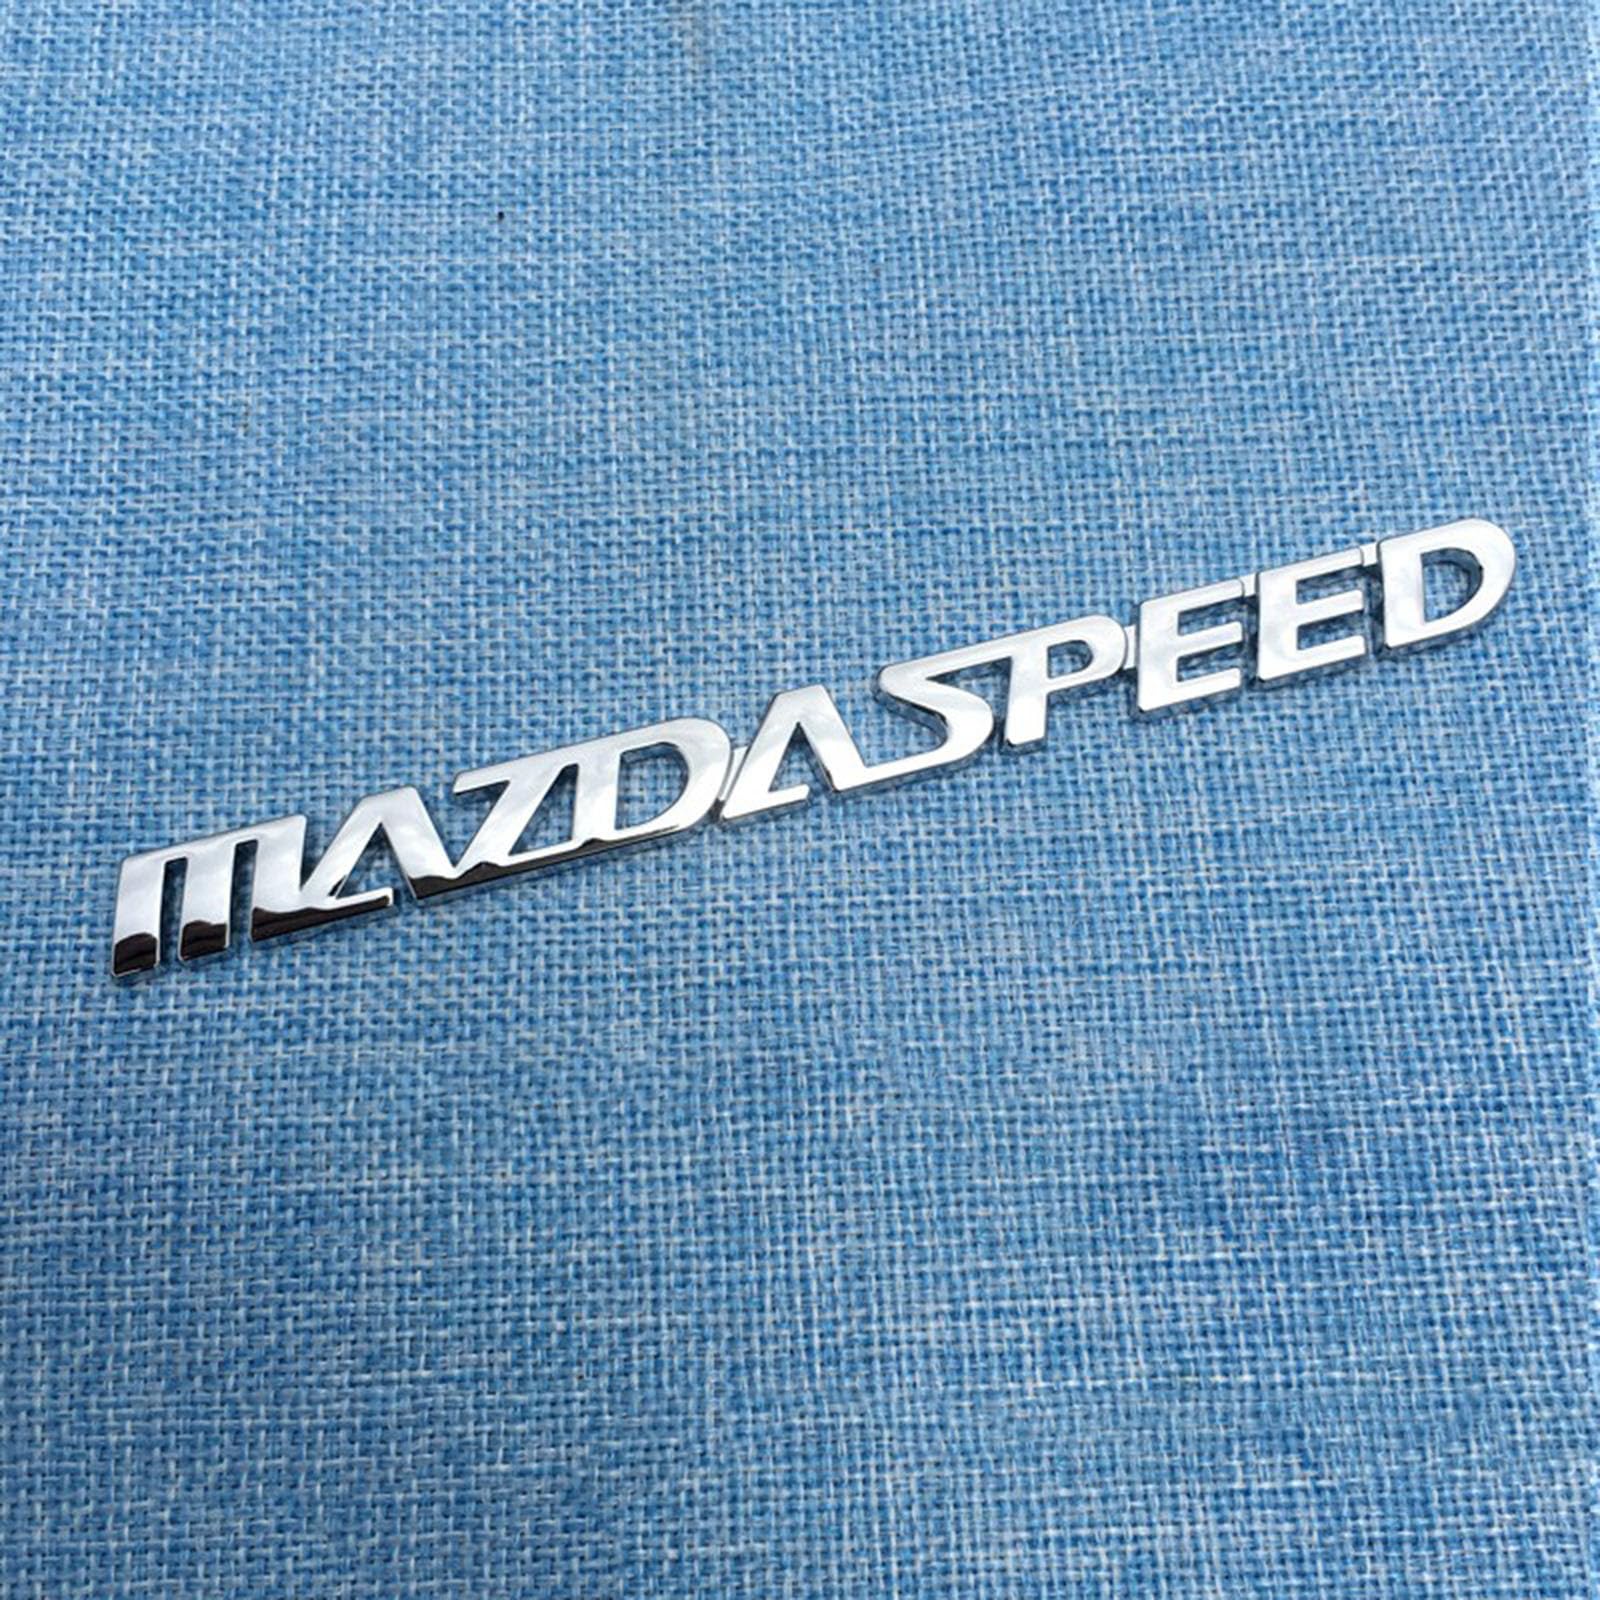 Auto Logo Aufkleber Abzeichen für Mazda Mazdaspeed, Auto Emblem Abziehbilder Styling Dekorative, Auto Body Abzeichen Emblem Aufkleber, Auto Zubehör,B Silver von DECAIK